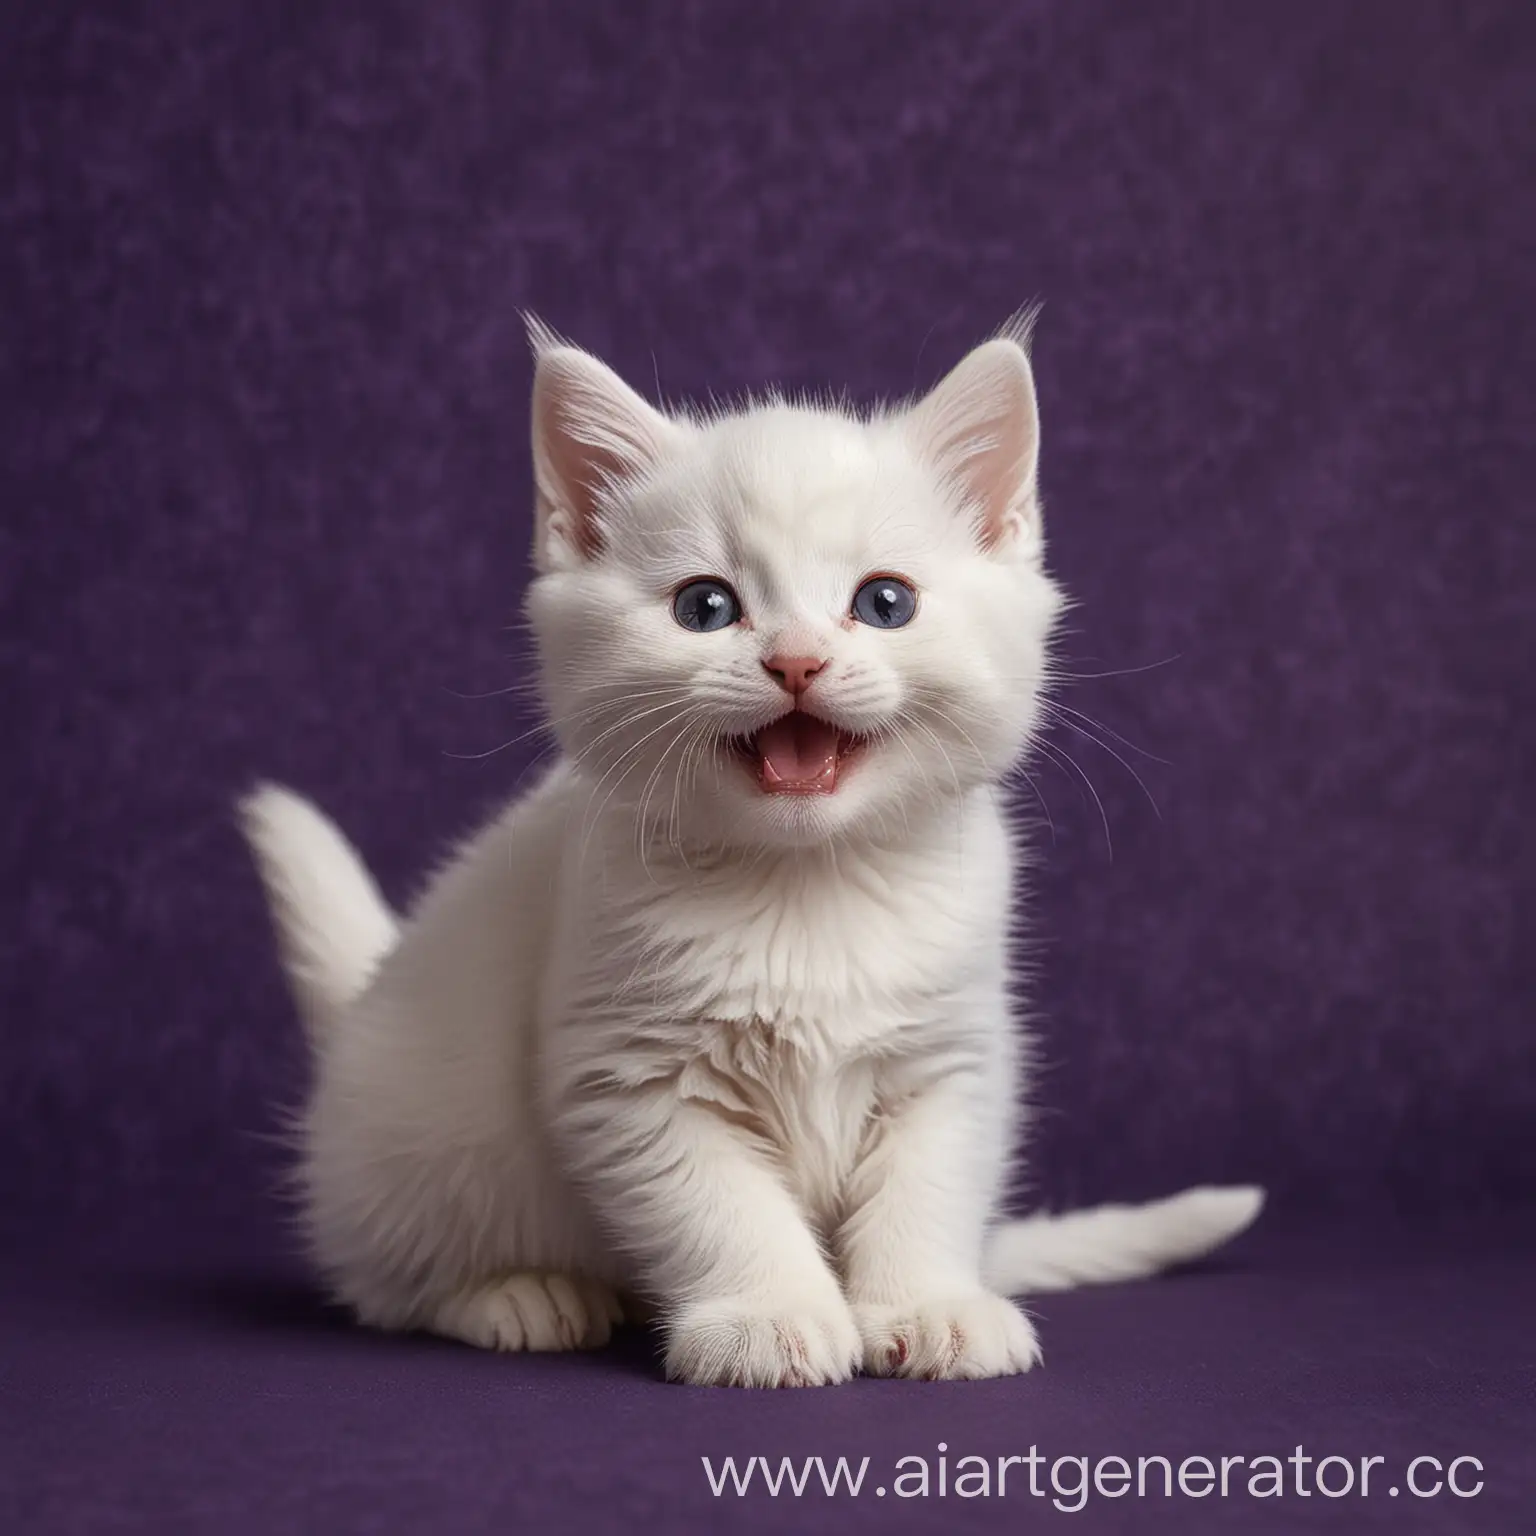 белый котенок улыбается на темнофиолетовом фоне 